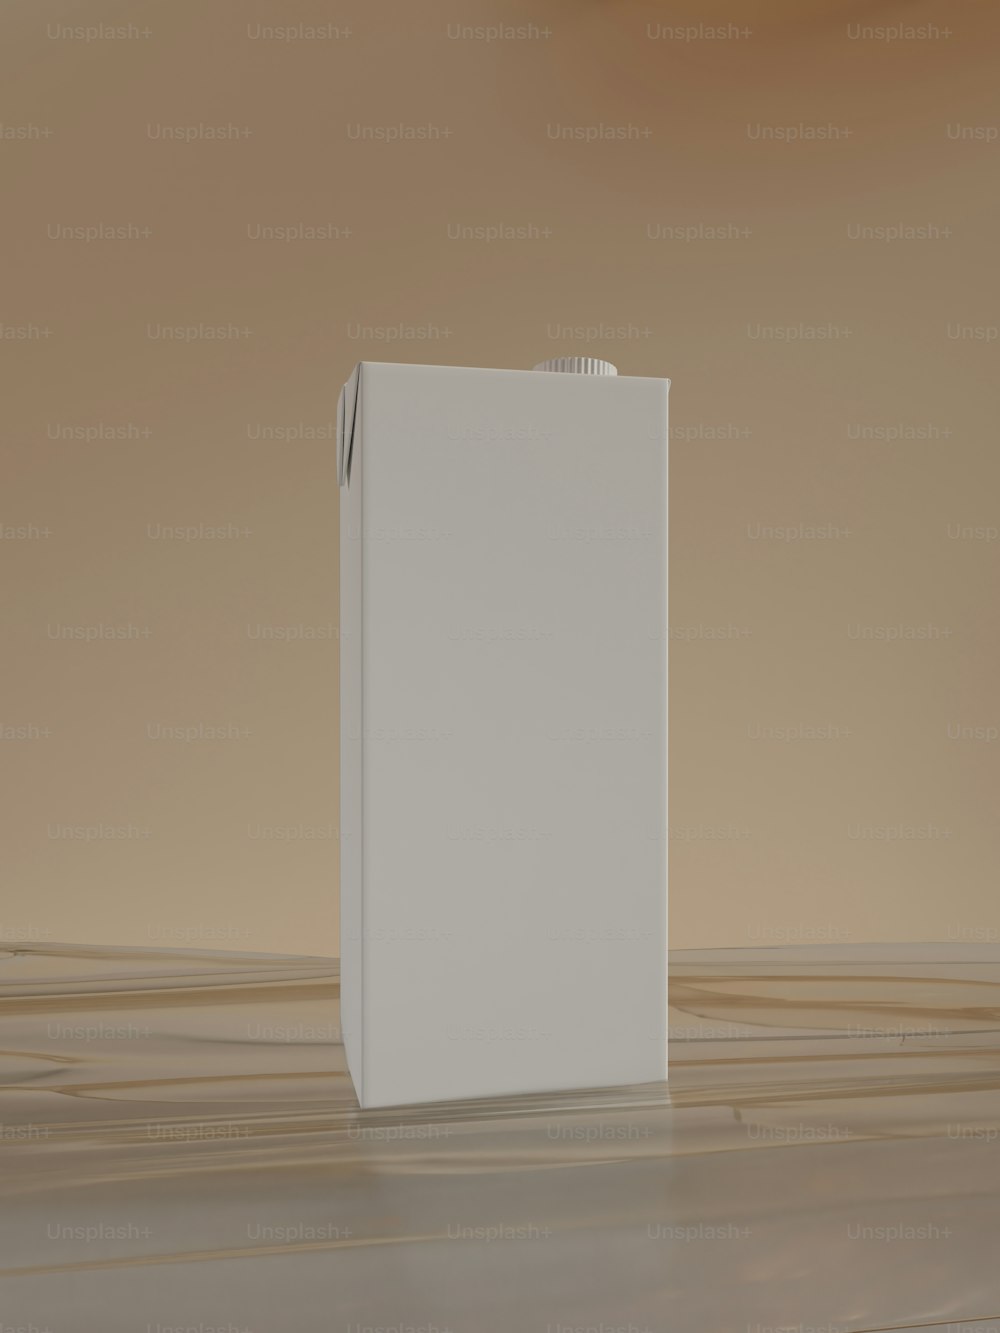 une boîte blanche posée sur un plancher en bois